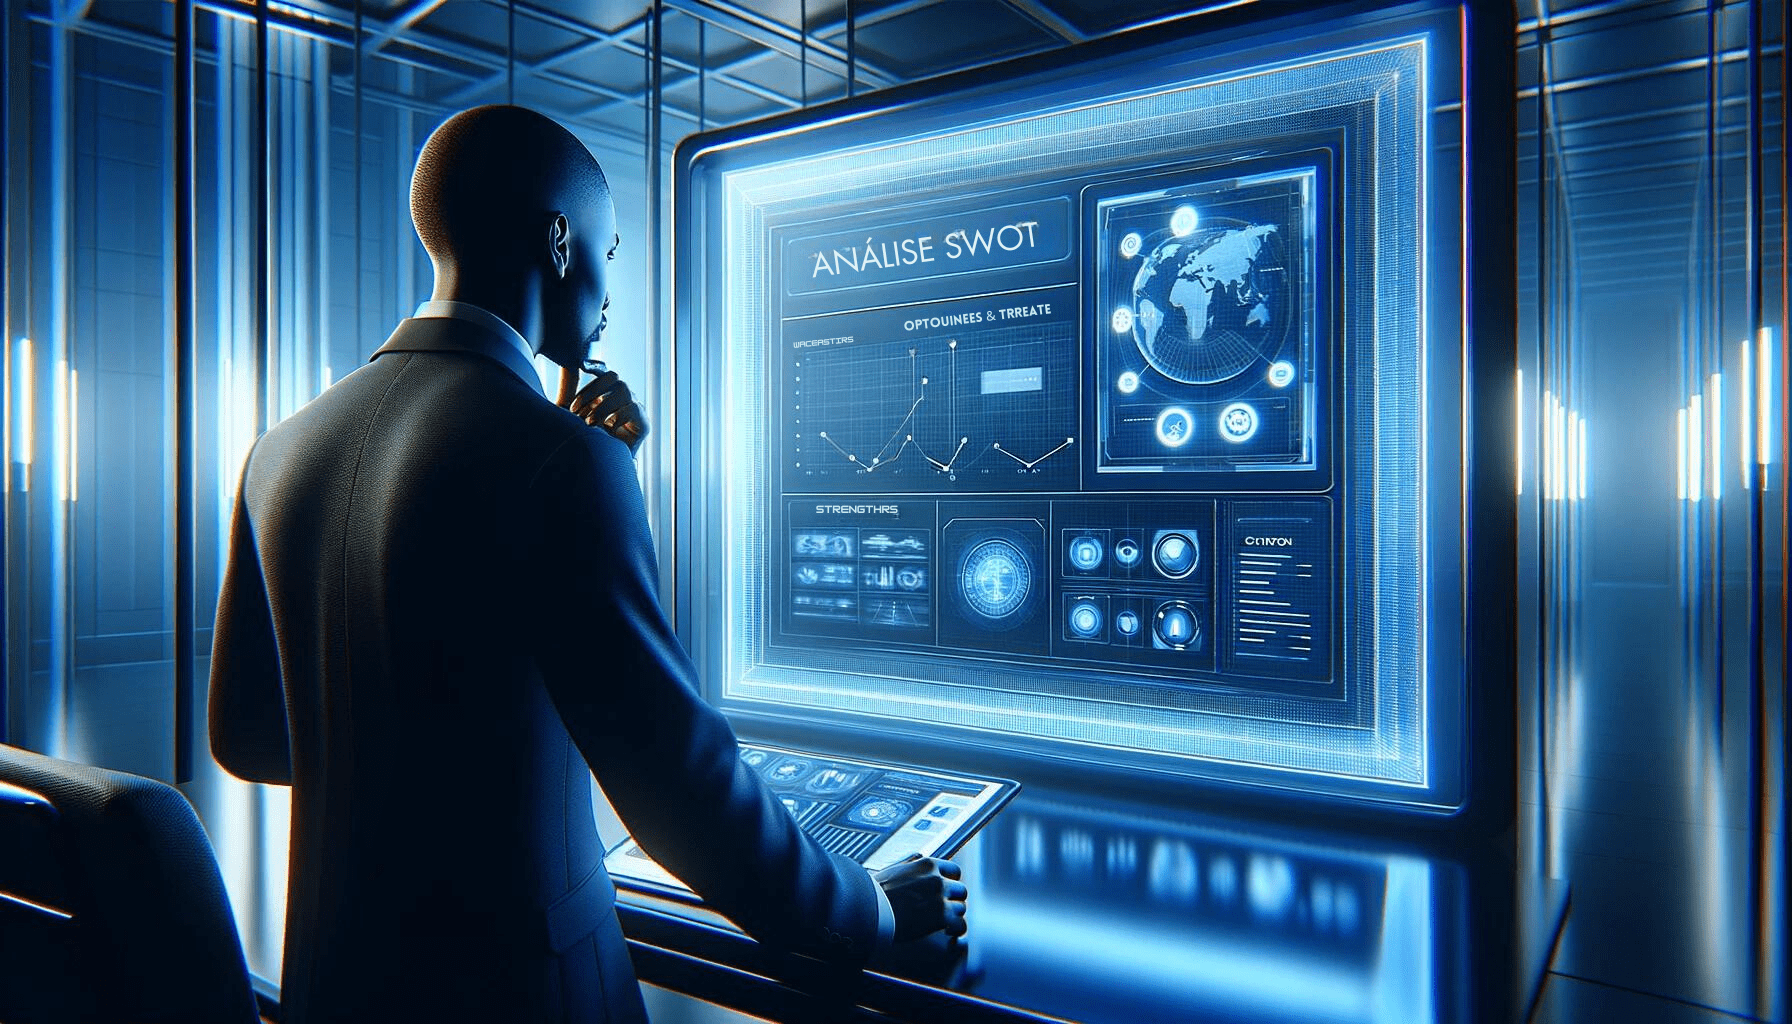 Um profissional de ascendência africana realiza uma análise SWOT em um display interativo dentro de um escritório futurista minimalista azul, refletindo sobre estratégias empresariais.